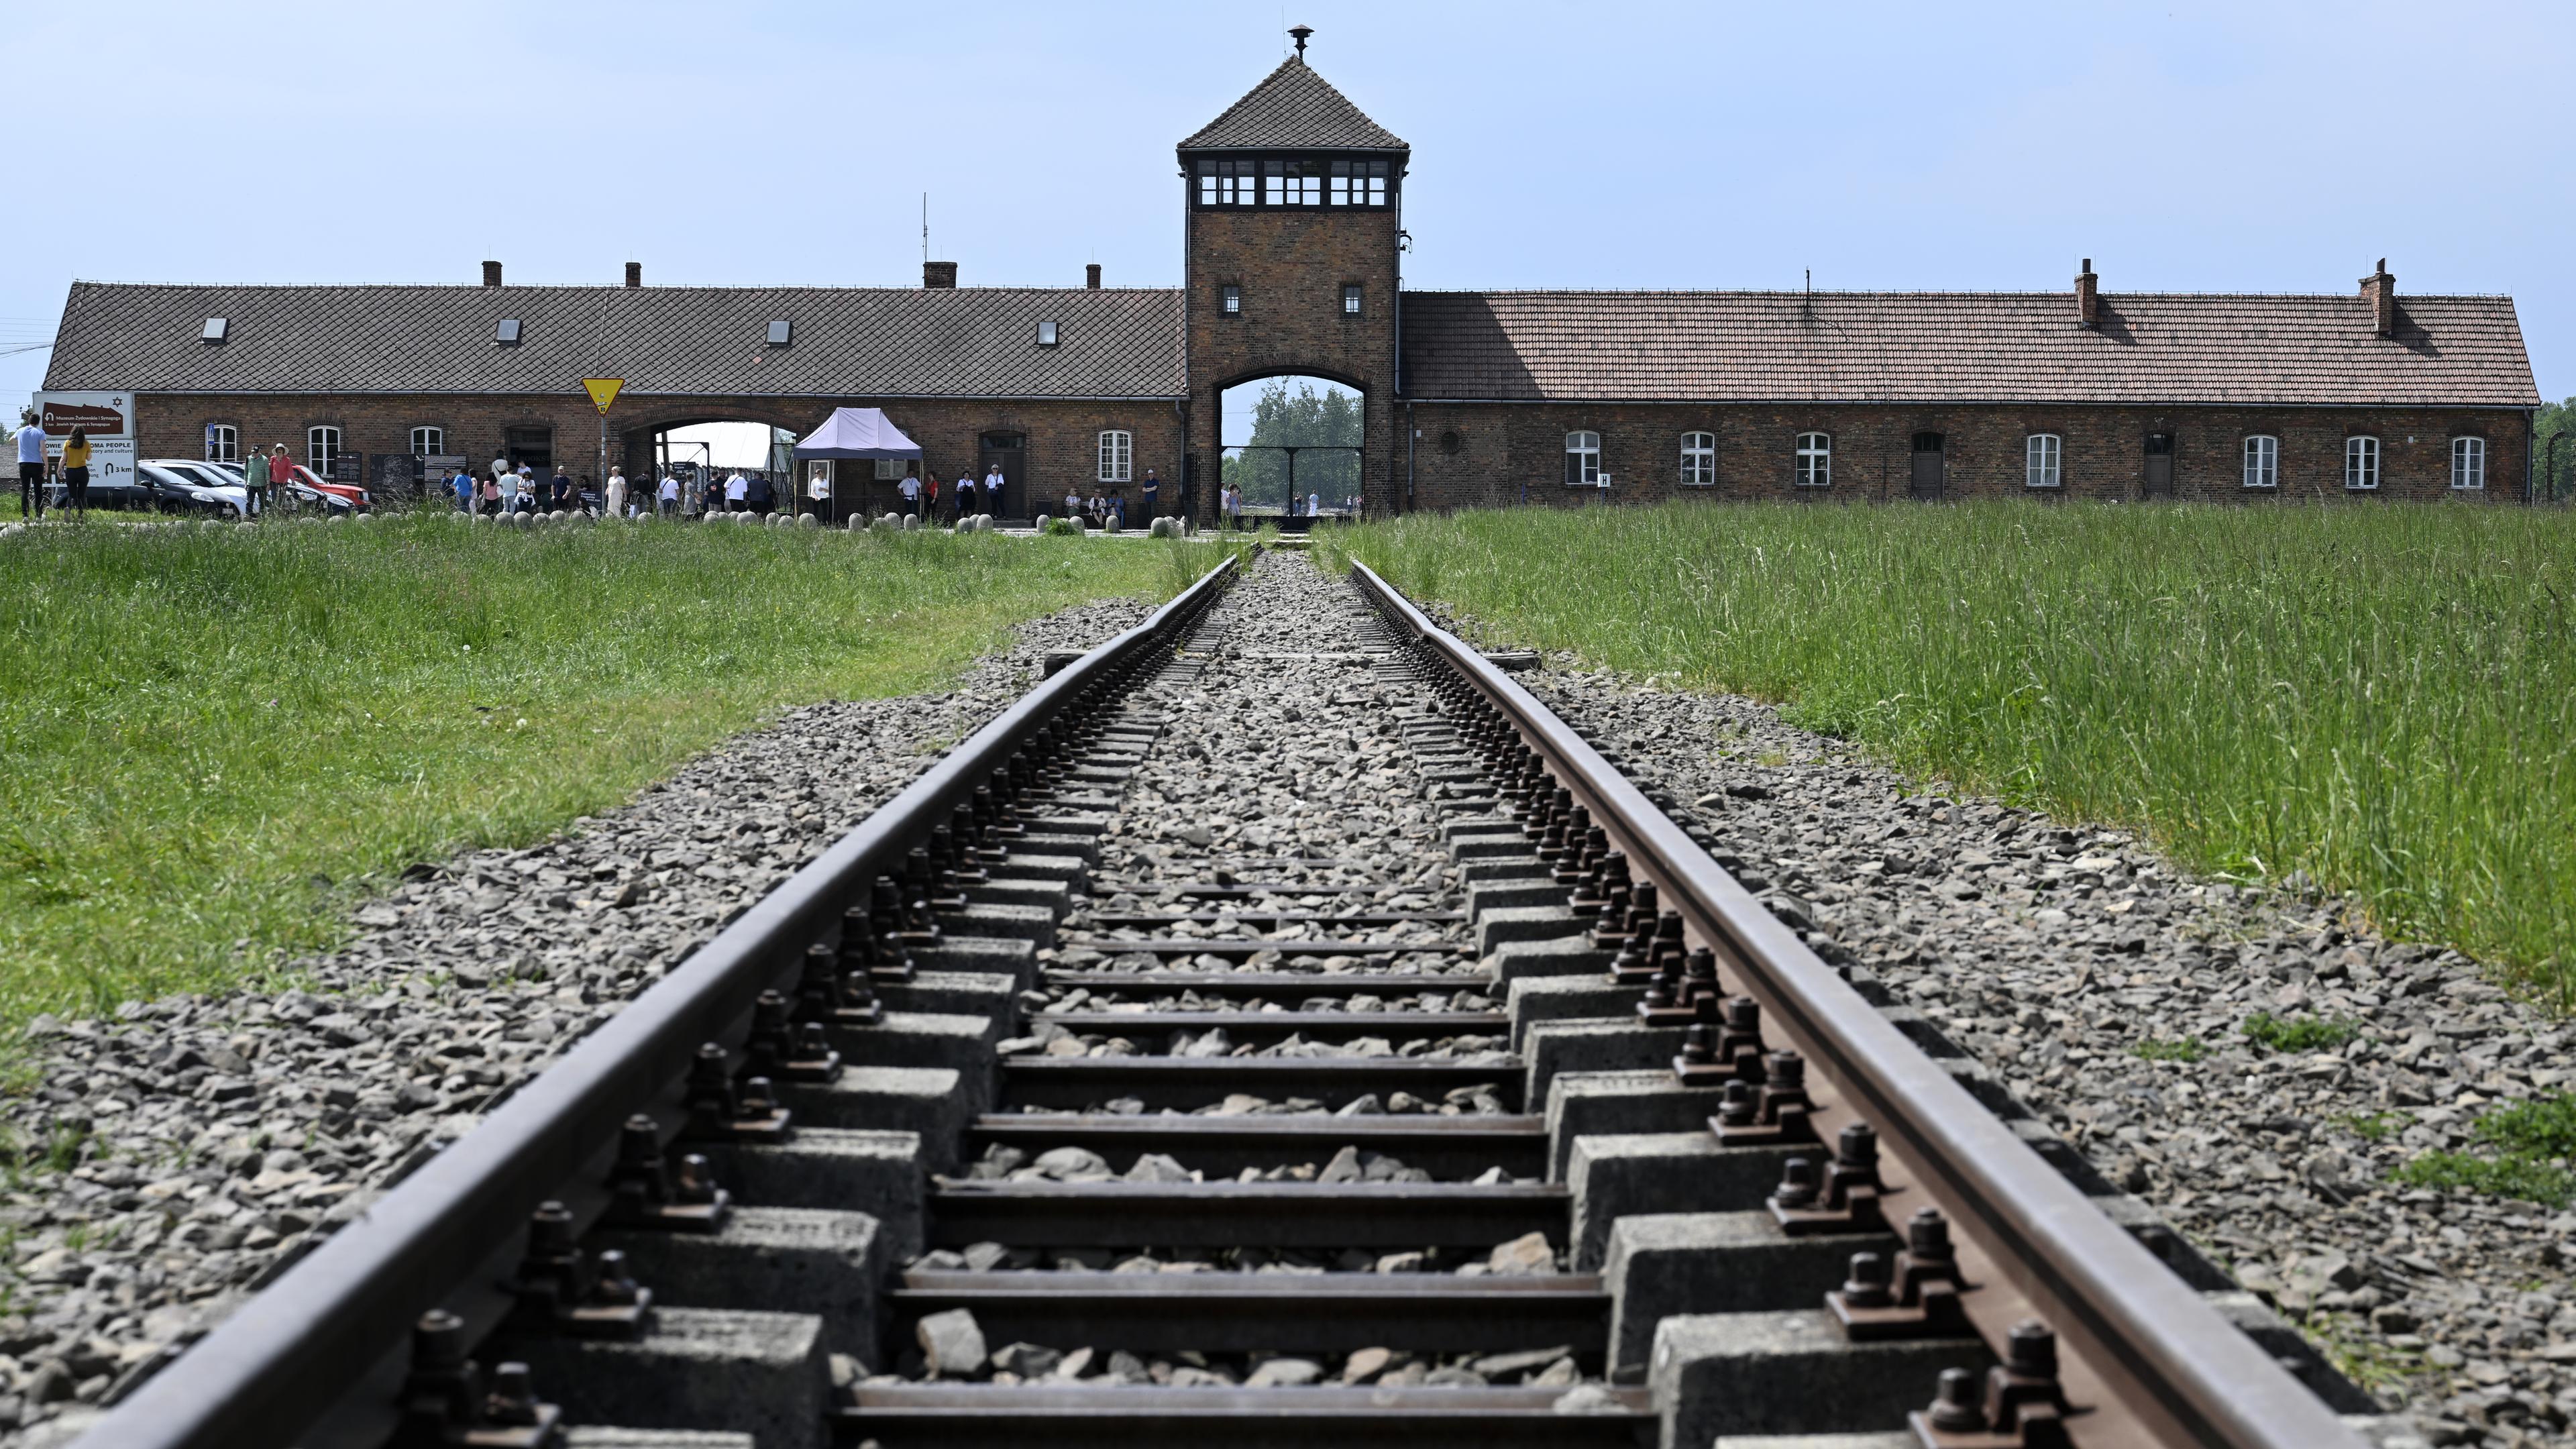 Ehemaliges Konzentrationszentrum Auschwitz-Birkenau. Schienen führen zum Haupteingang.